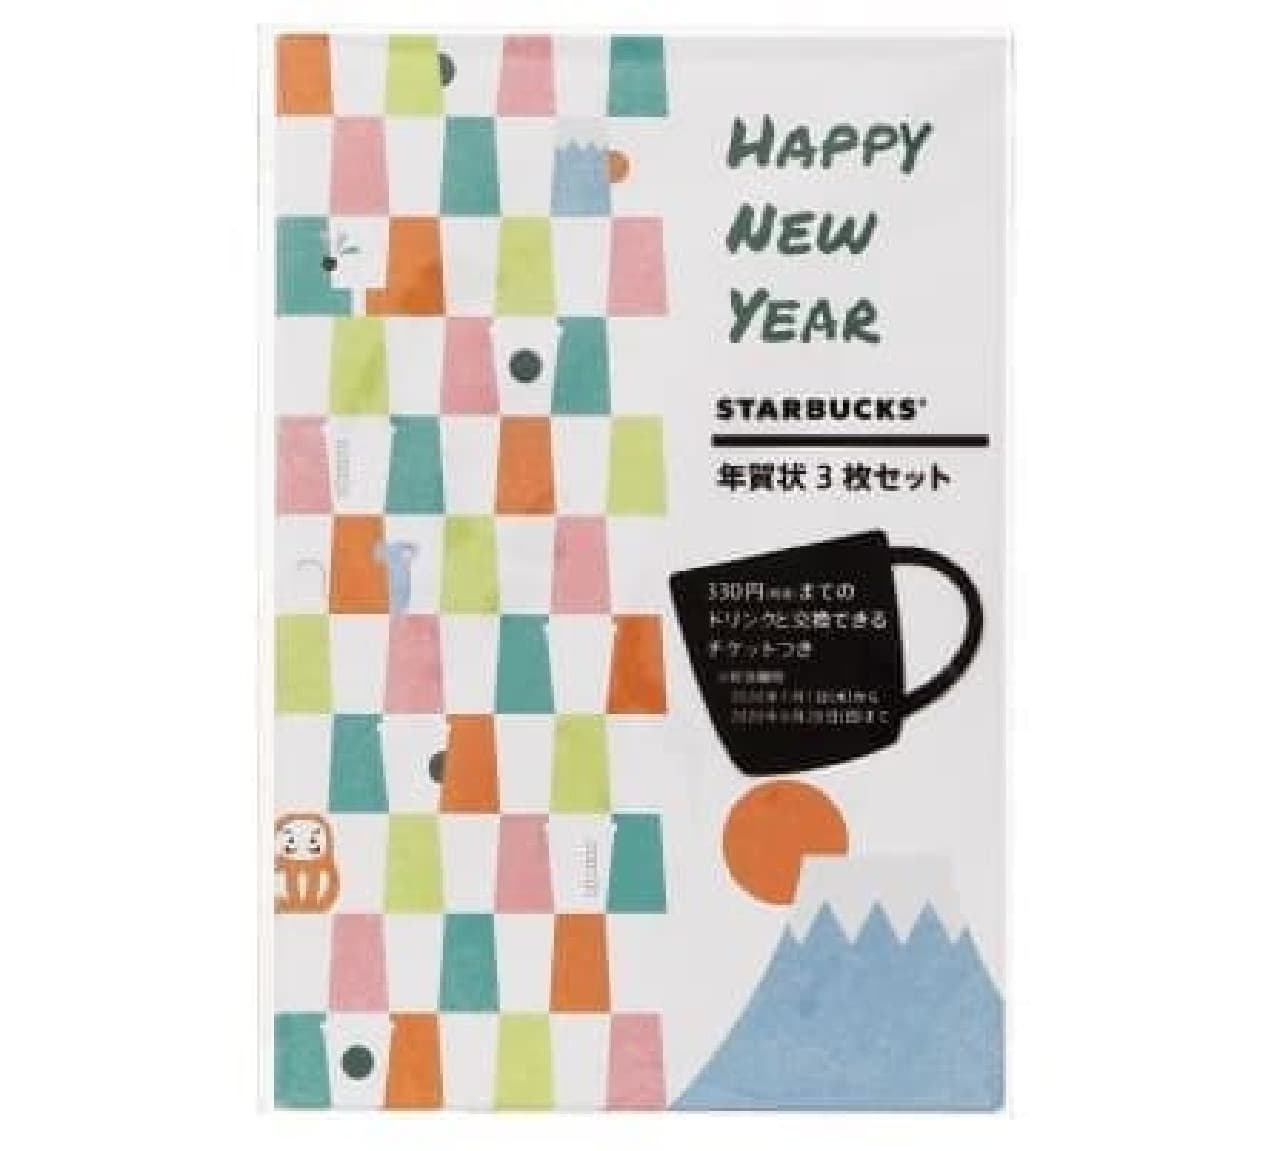 Starbucks "2020 Starbucks New Year's card set of 3"